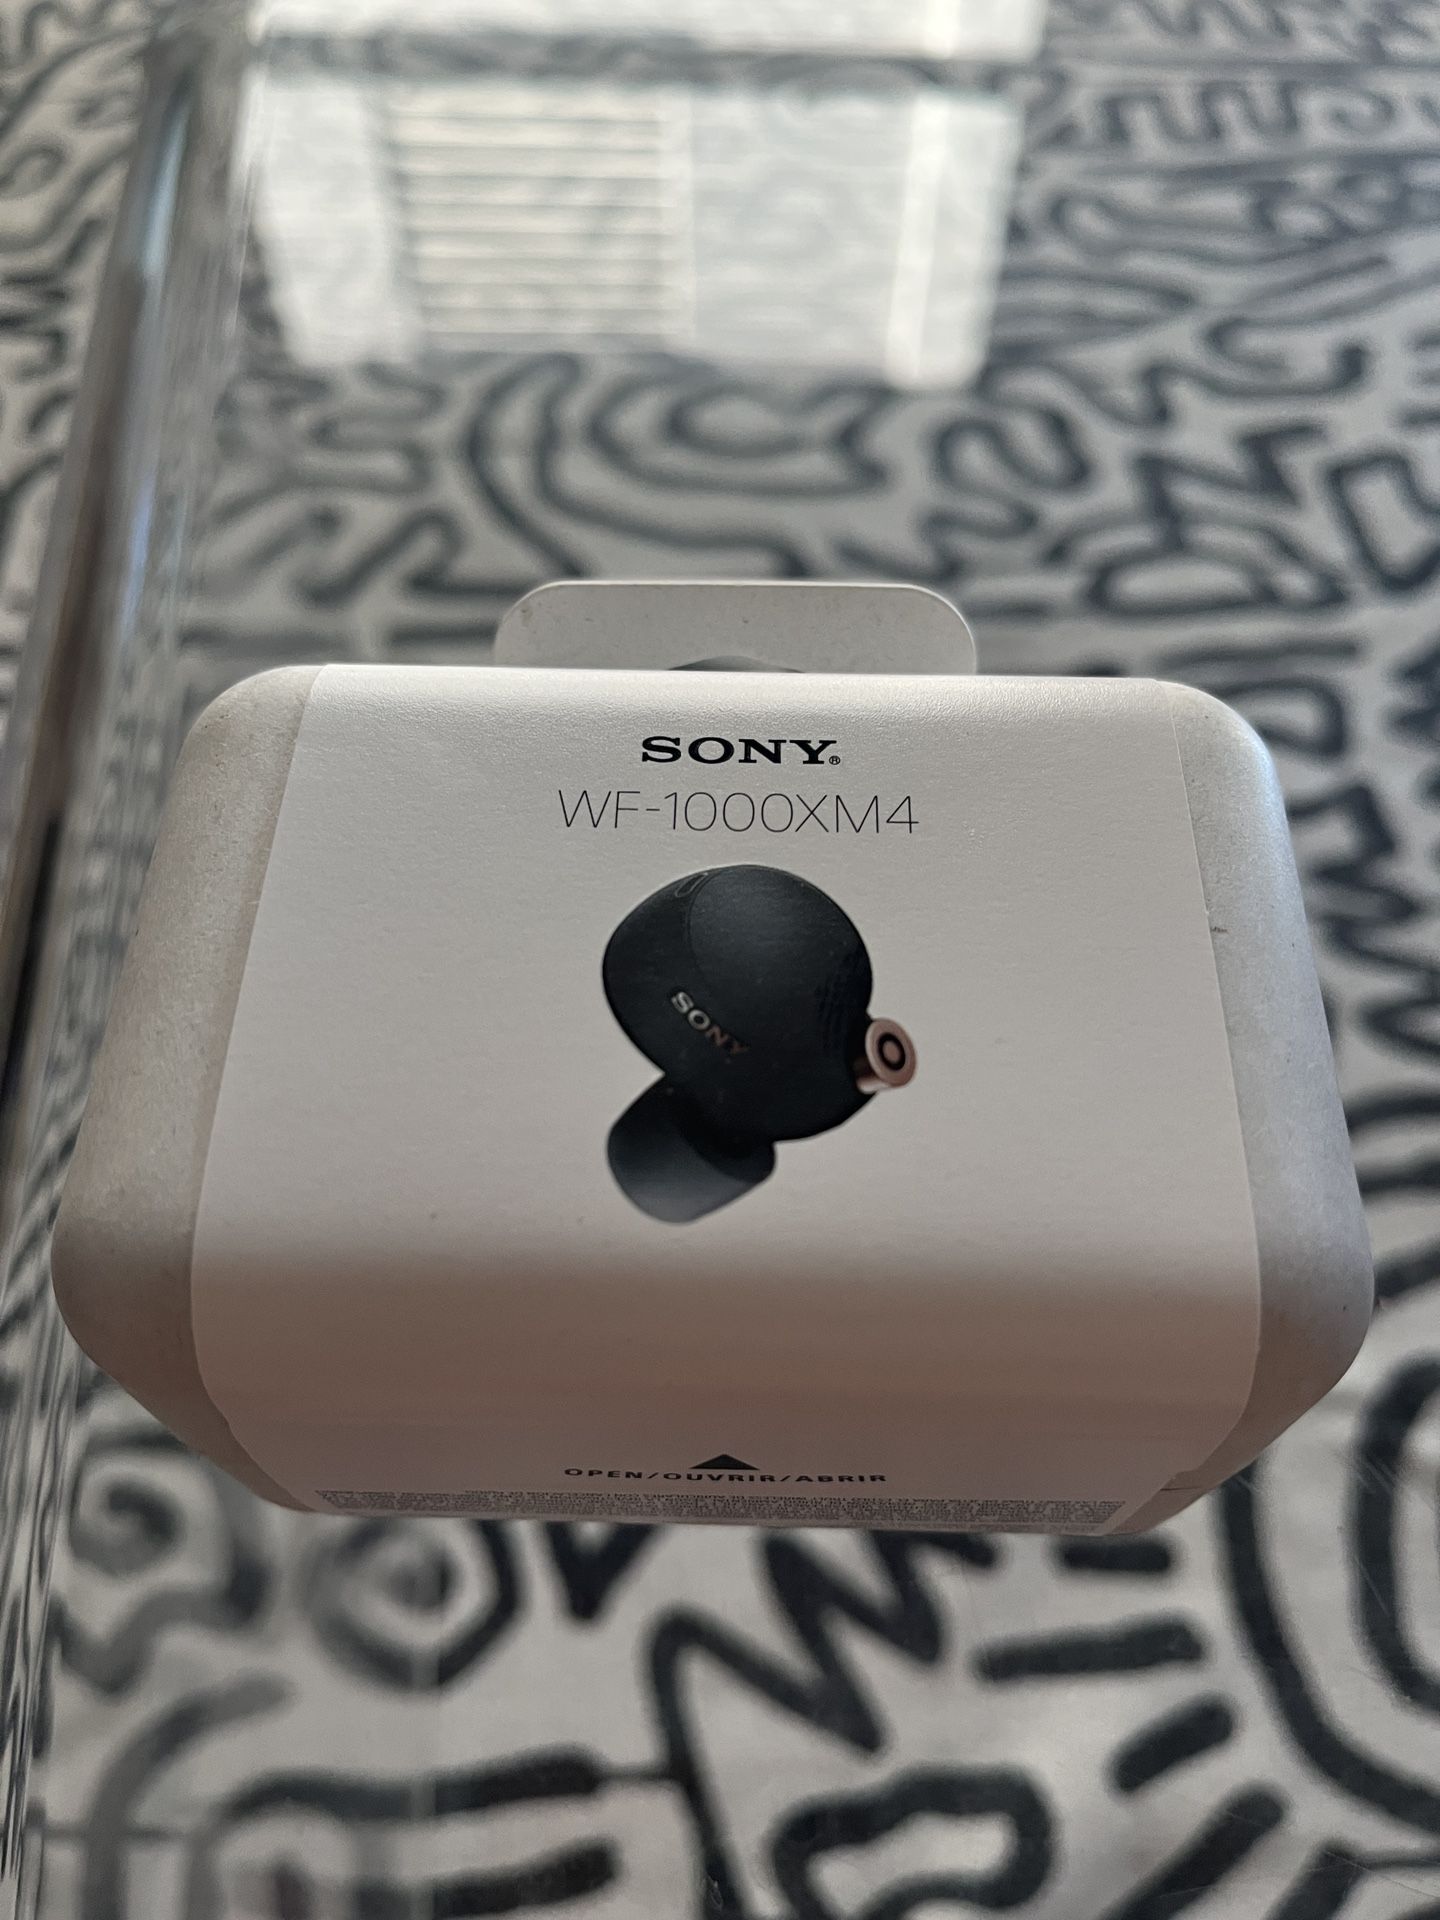 Sony WF-1000XM4 True Wireless Earbuds - BRAND NEW